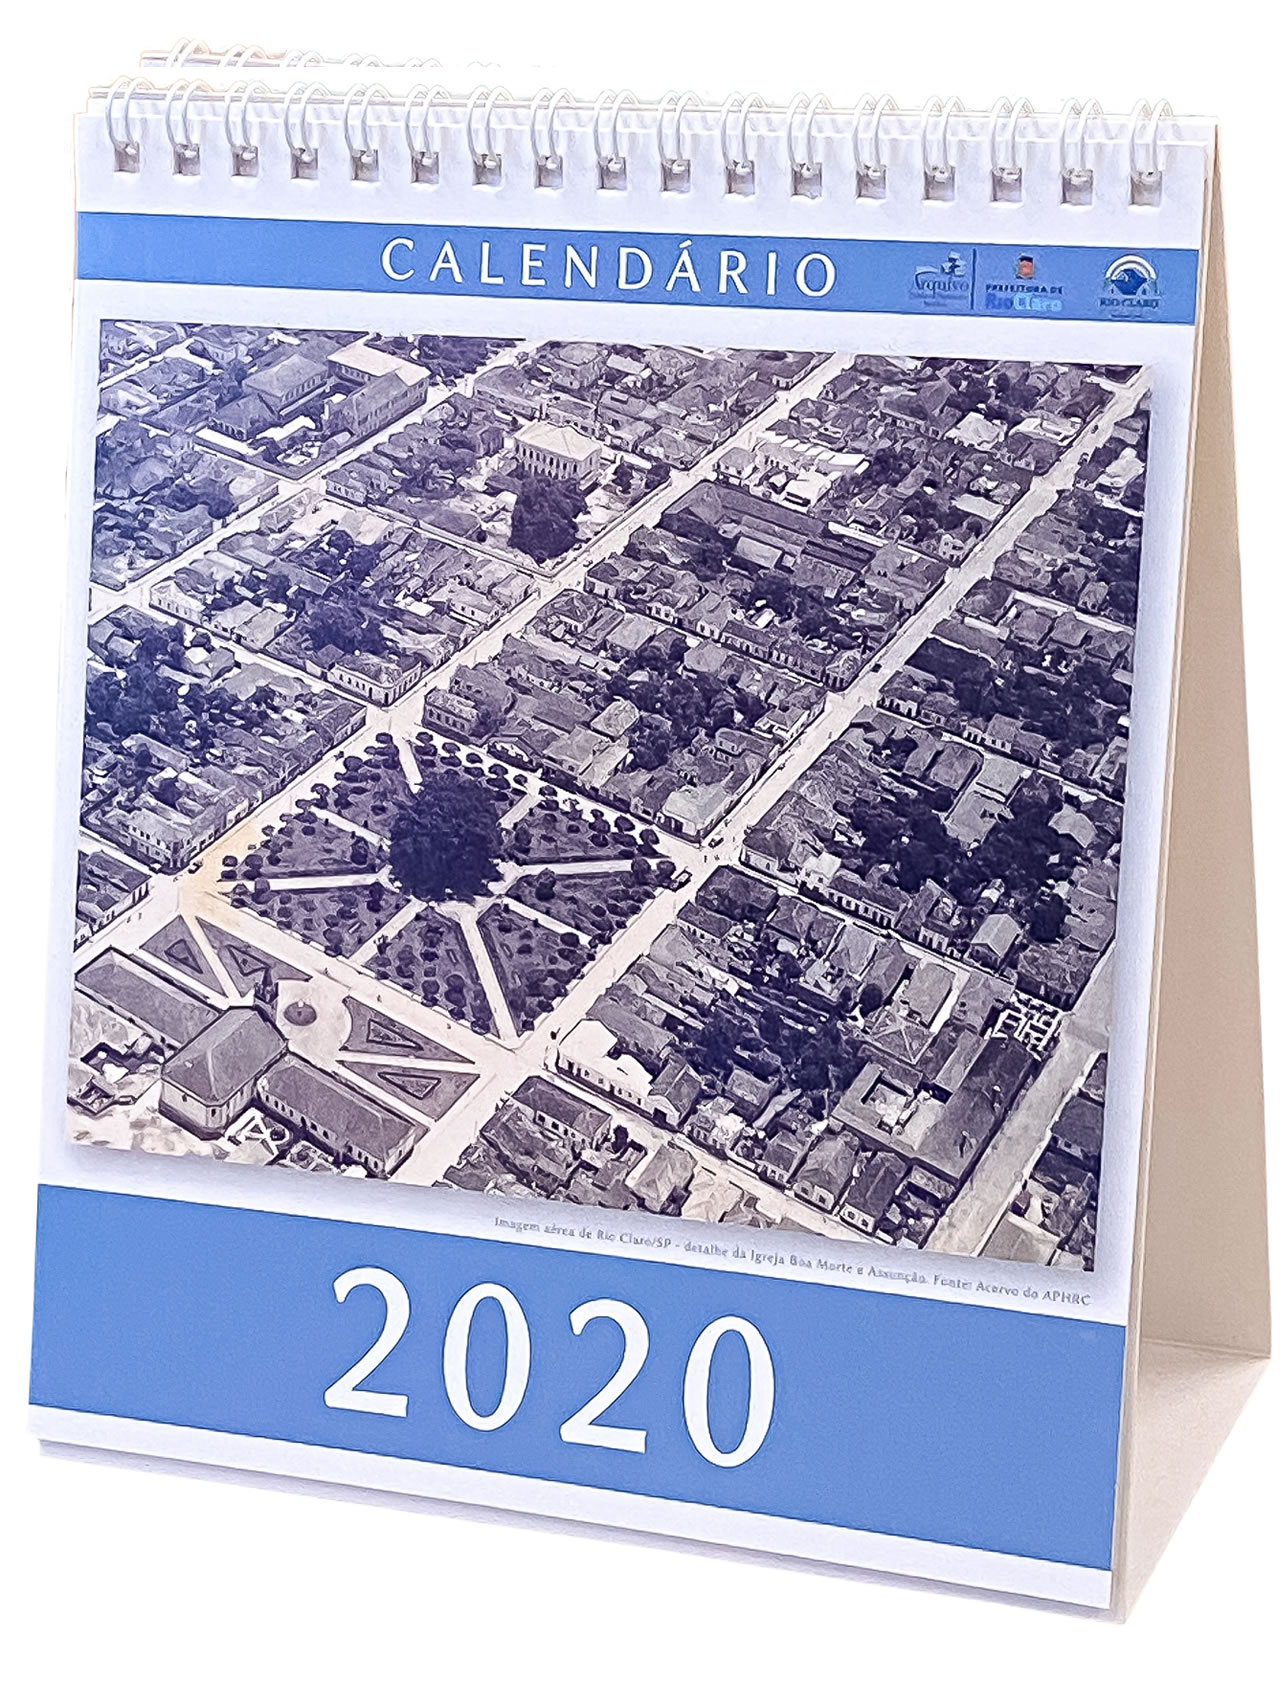 Calendário rio-clarense 2020